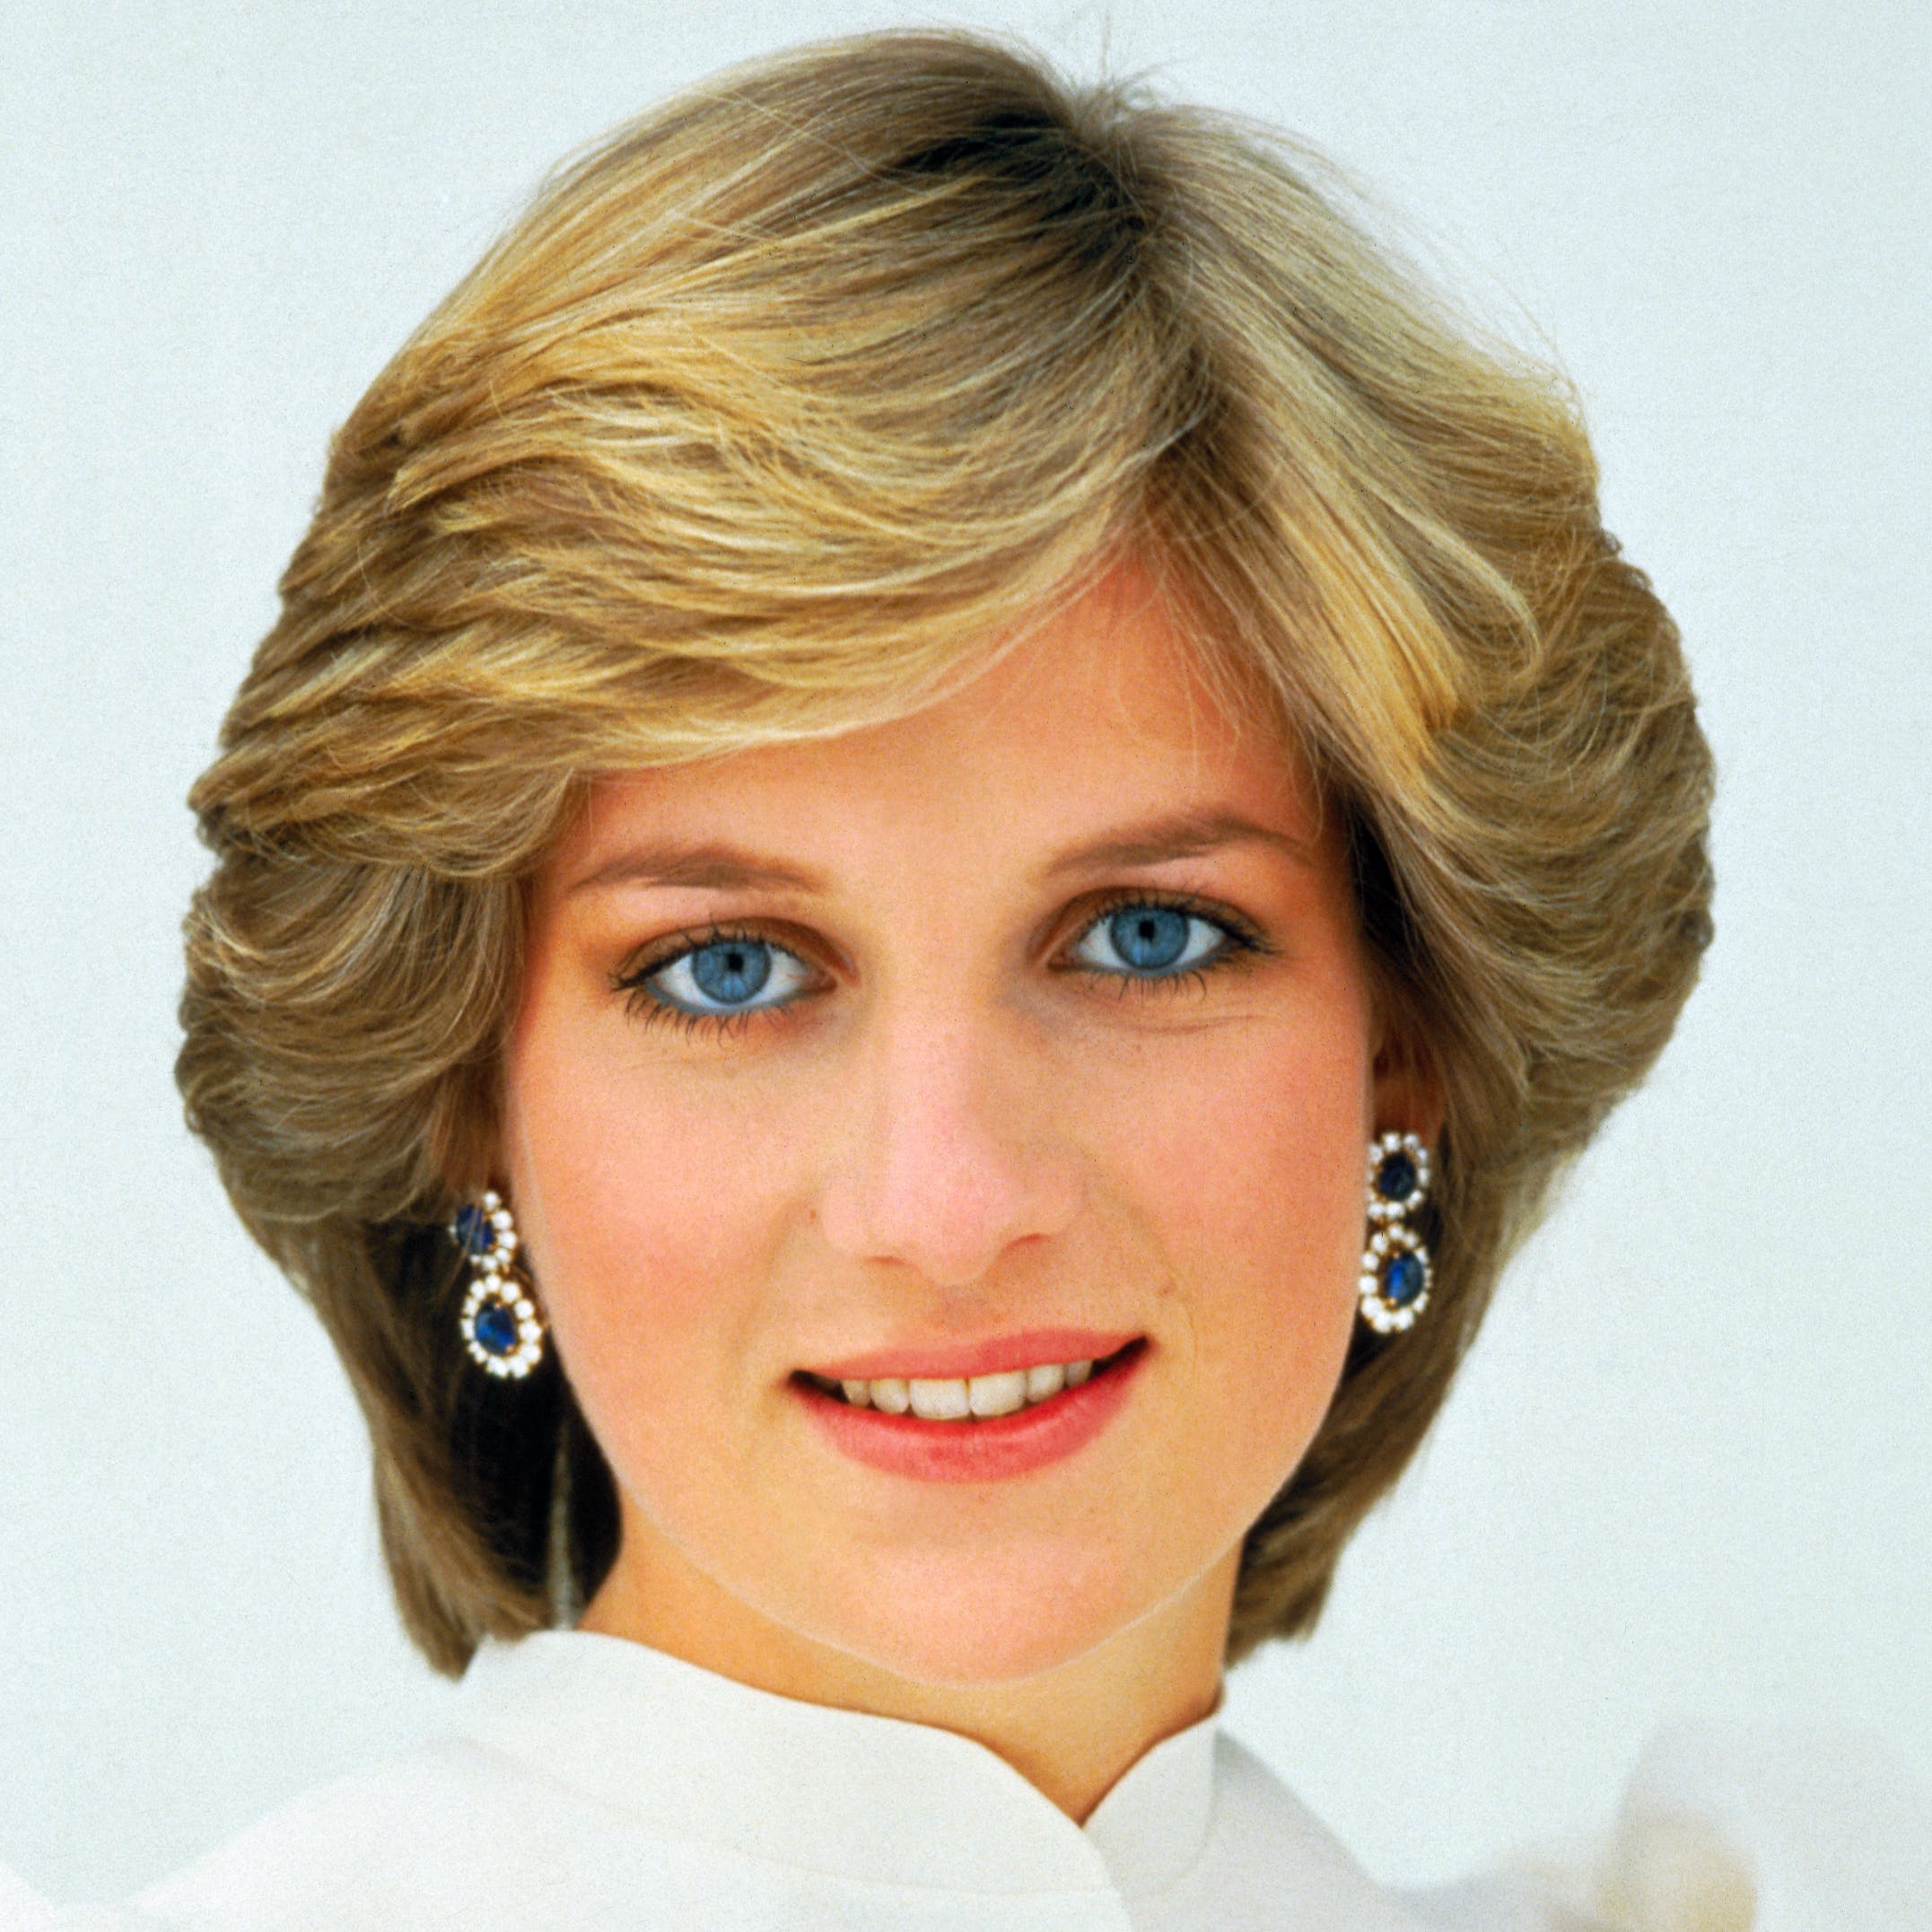 La vérité derrière la mort de la princesse Diana